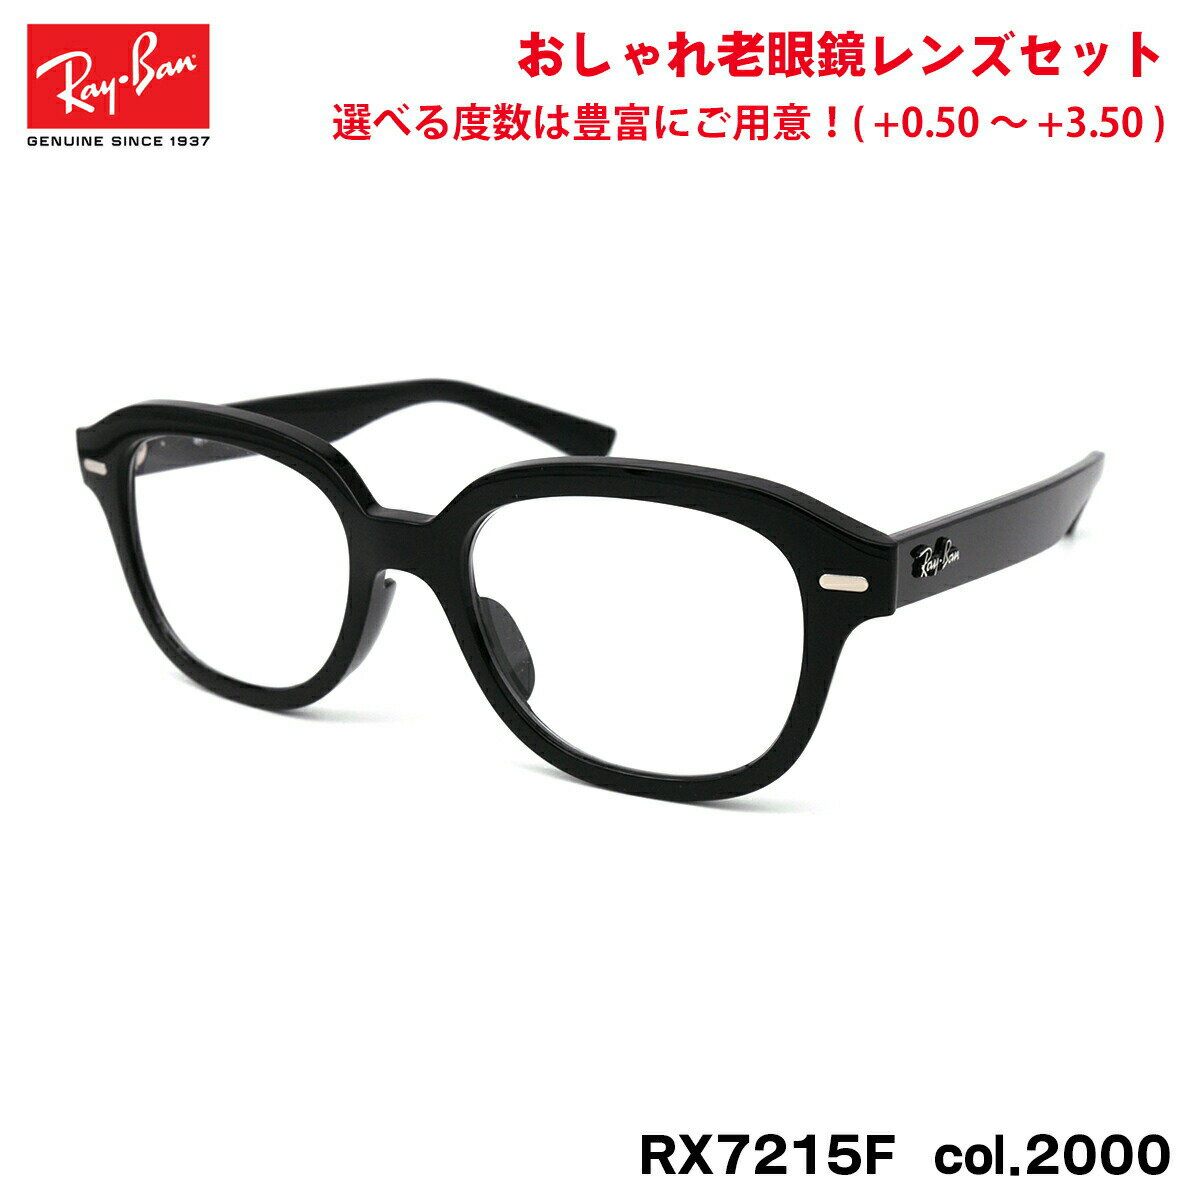 レイバン 老眼鏡 RX7215F (RB7215F) 2000 51mm Ray-Ban ERIK エリック アジアンフィット UVカット ブルーライトカット